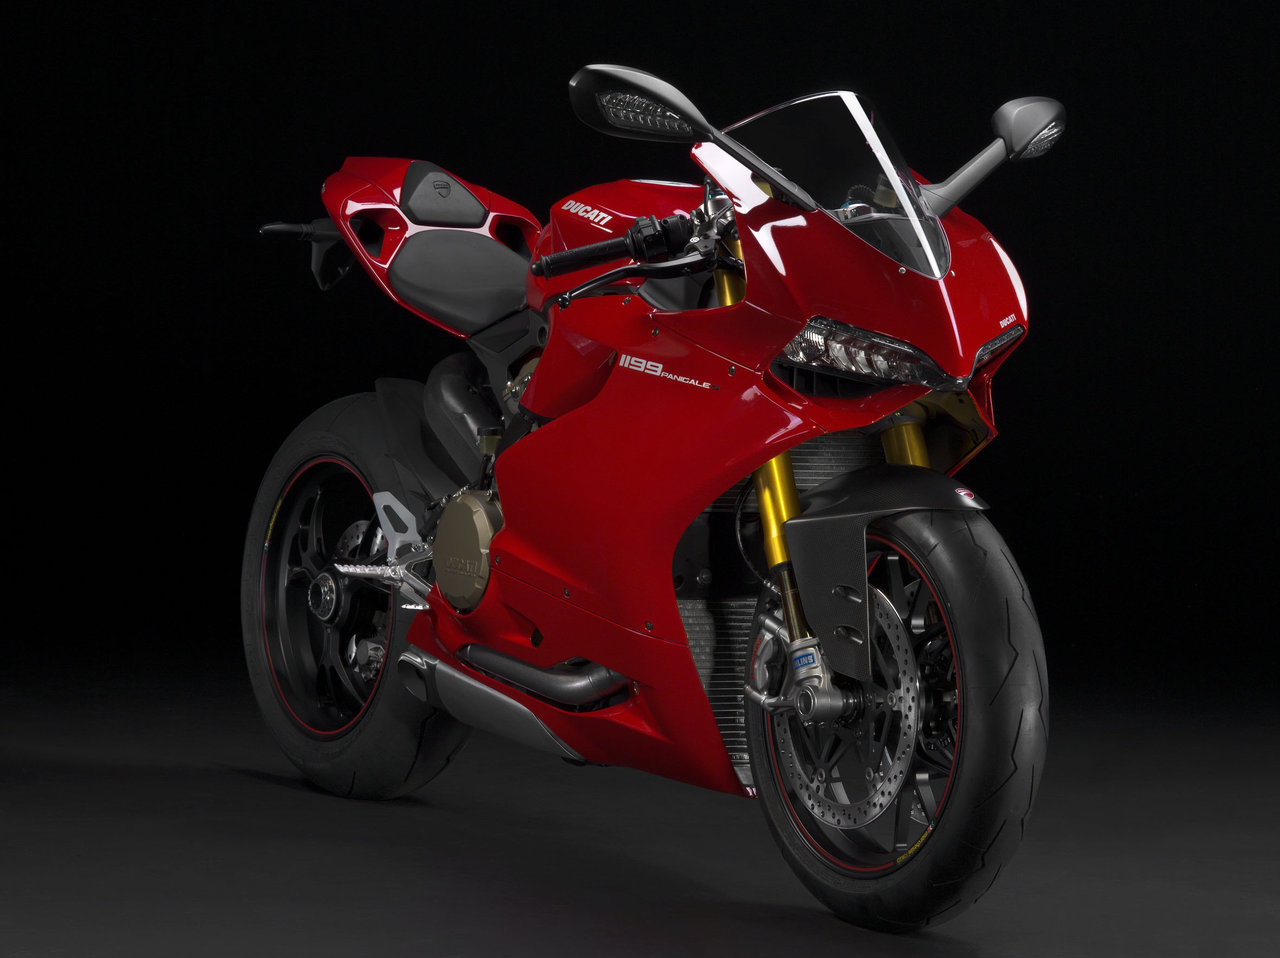 Moto dell’anno 2015 alla Ducati - image 13244_1 on https://moto.motori.net